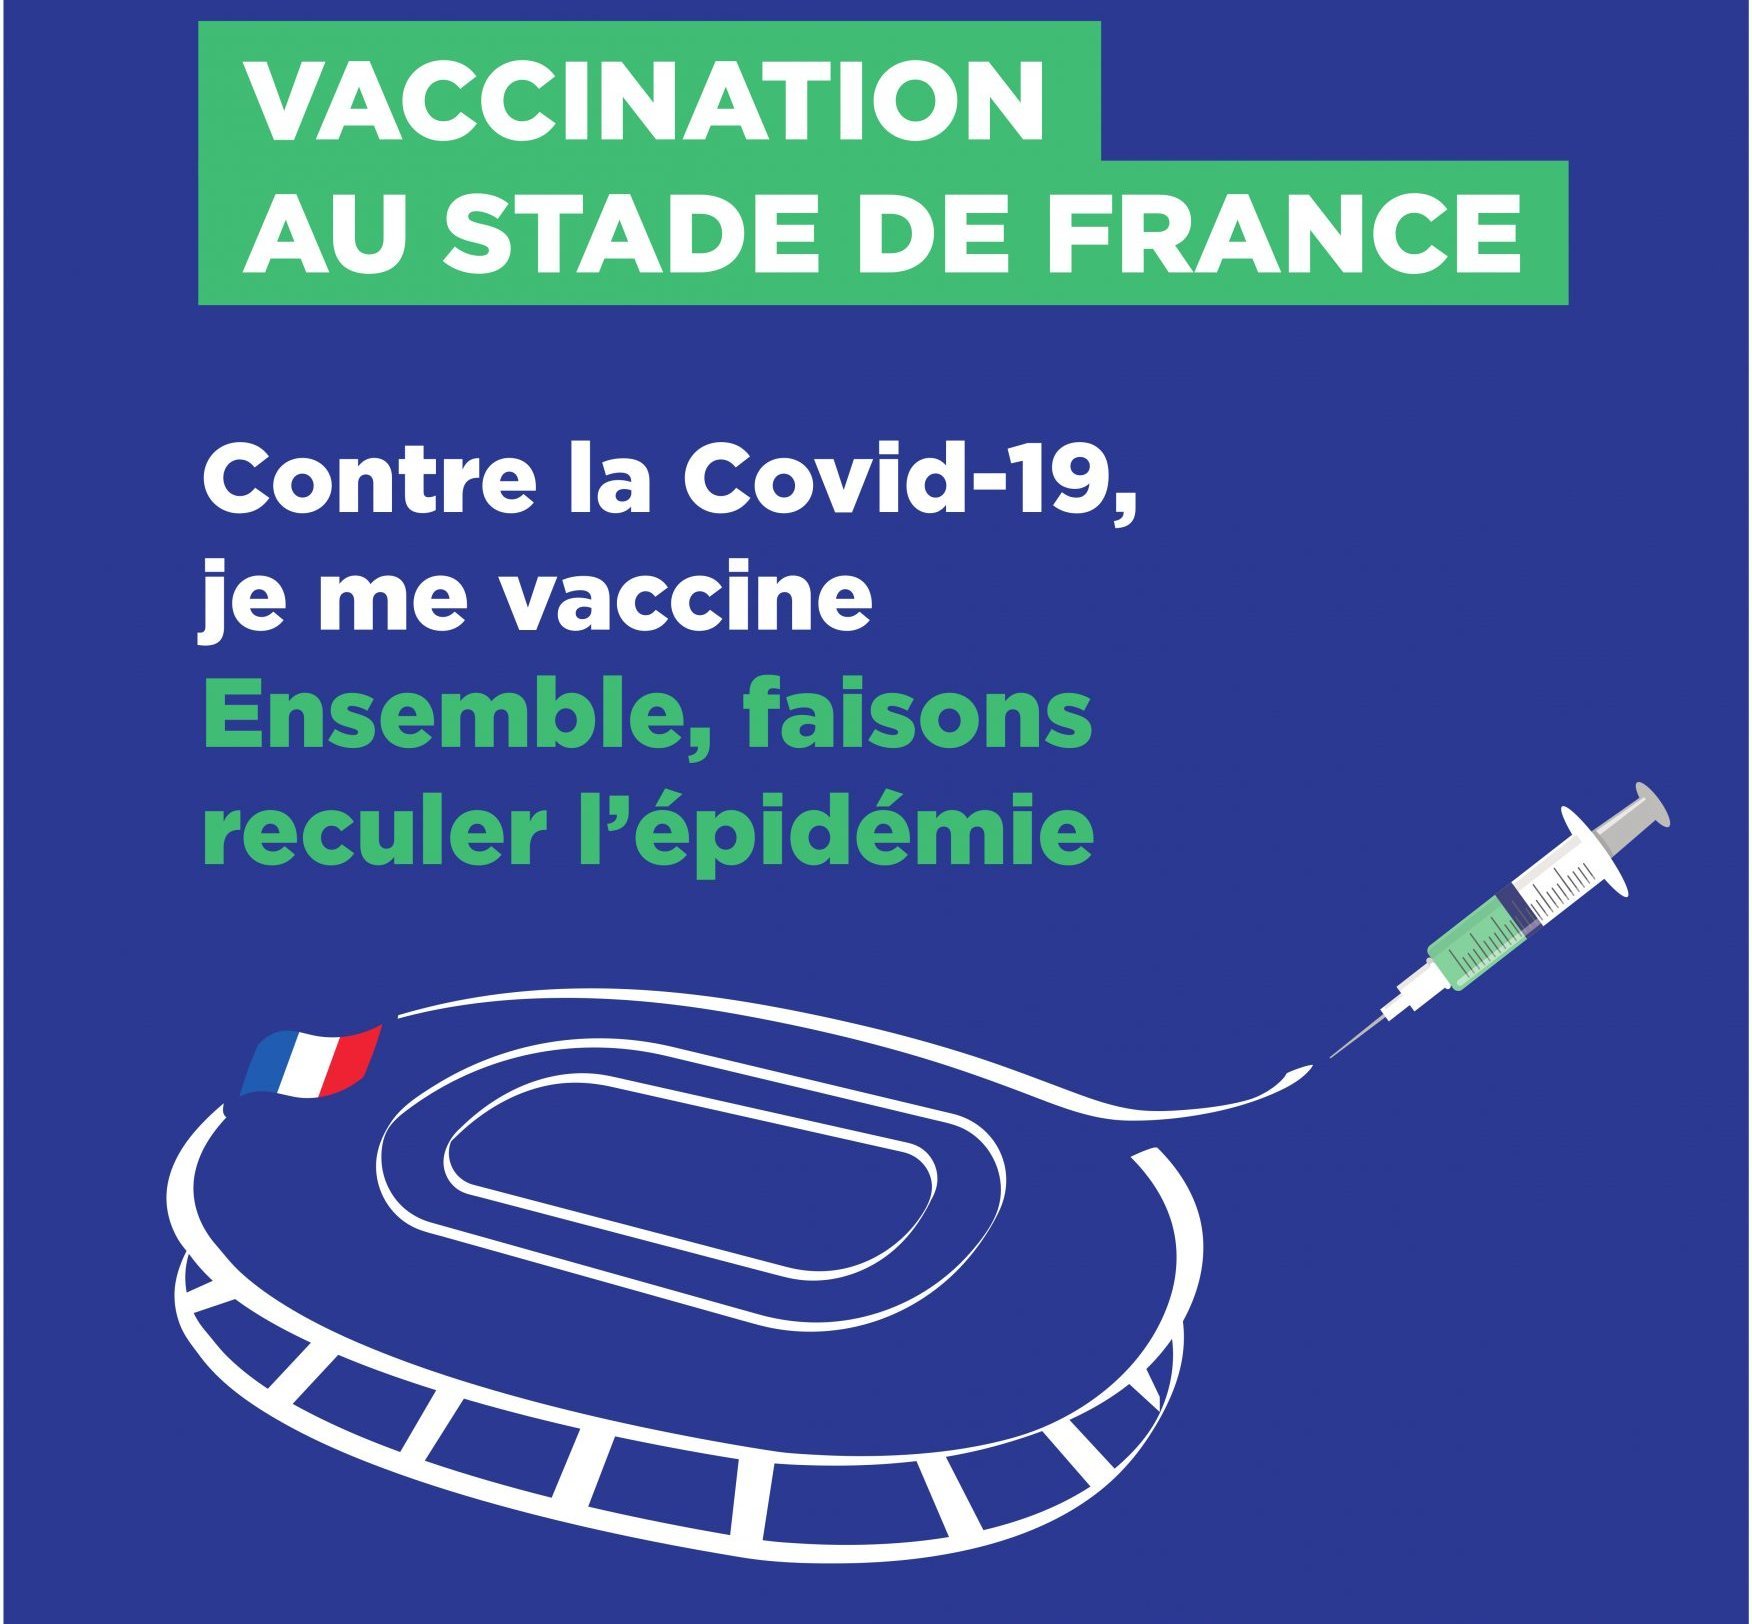 Ouverture du grand centre de vaccination au stade de France le 6 avril